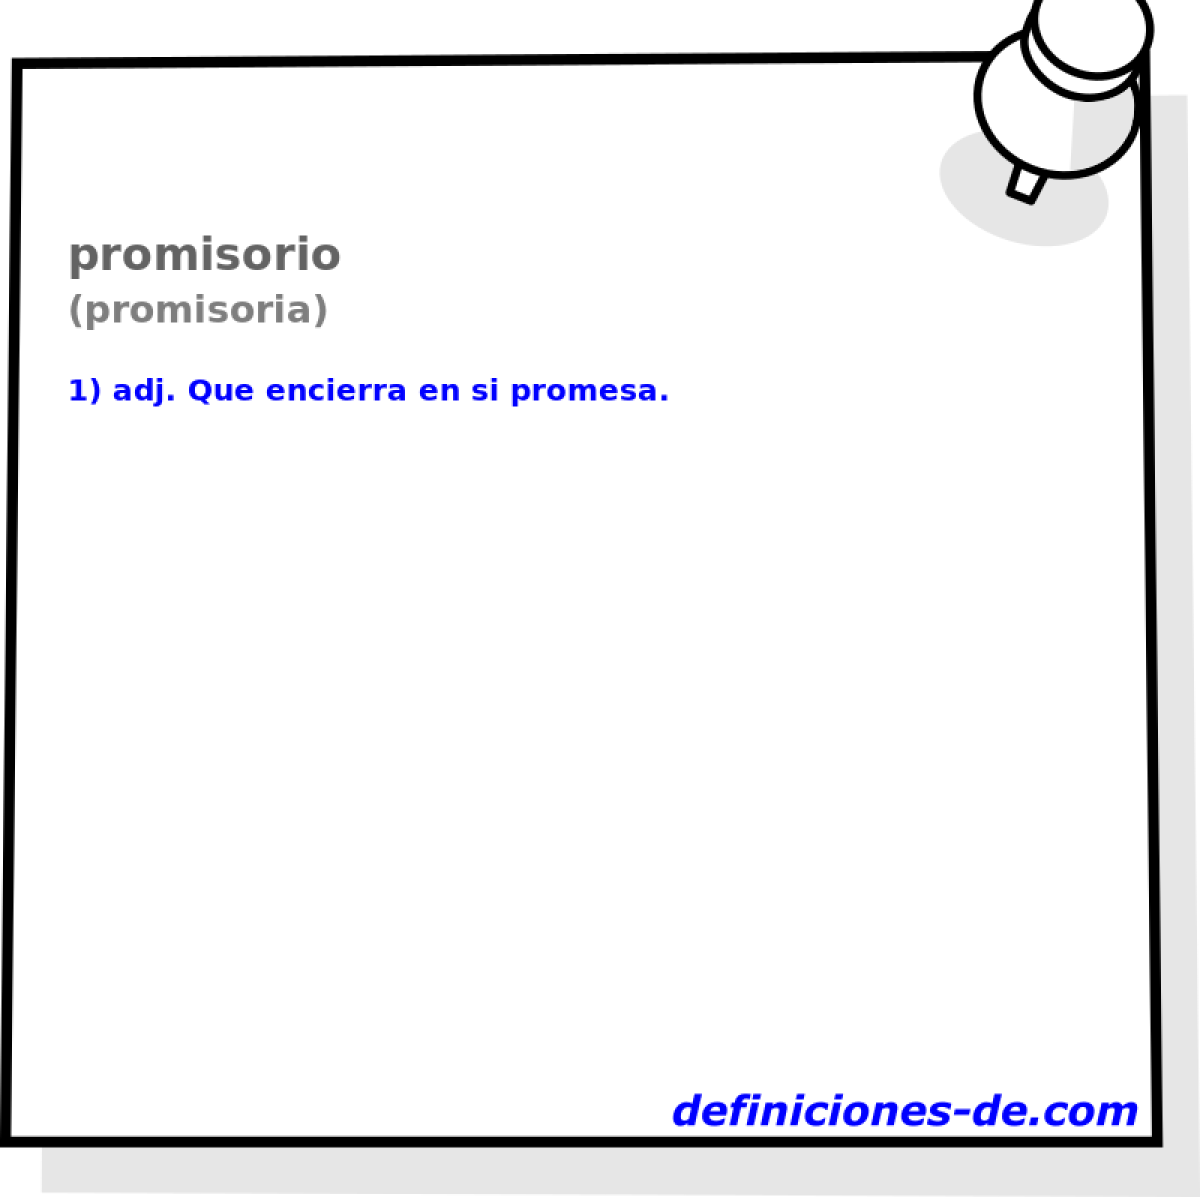 promisorio (promisoria)